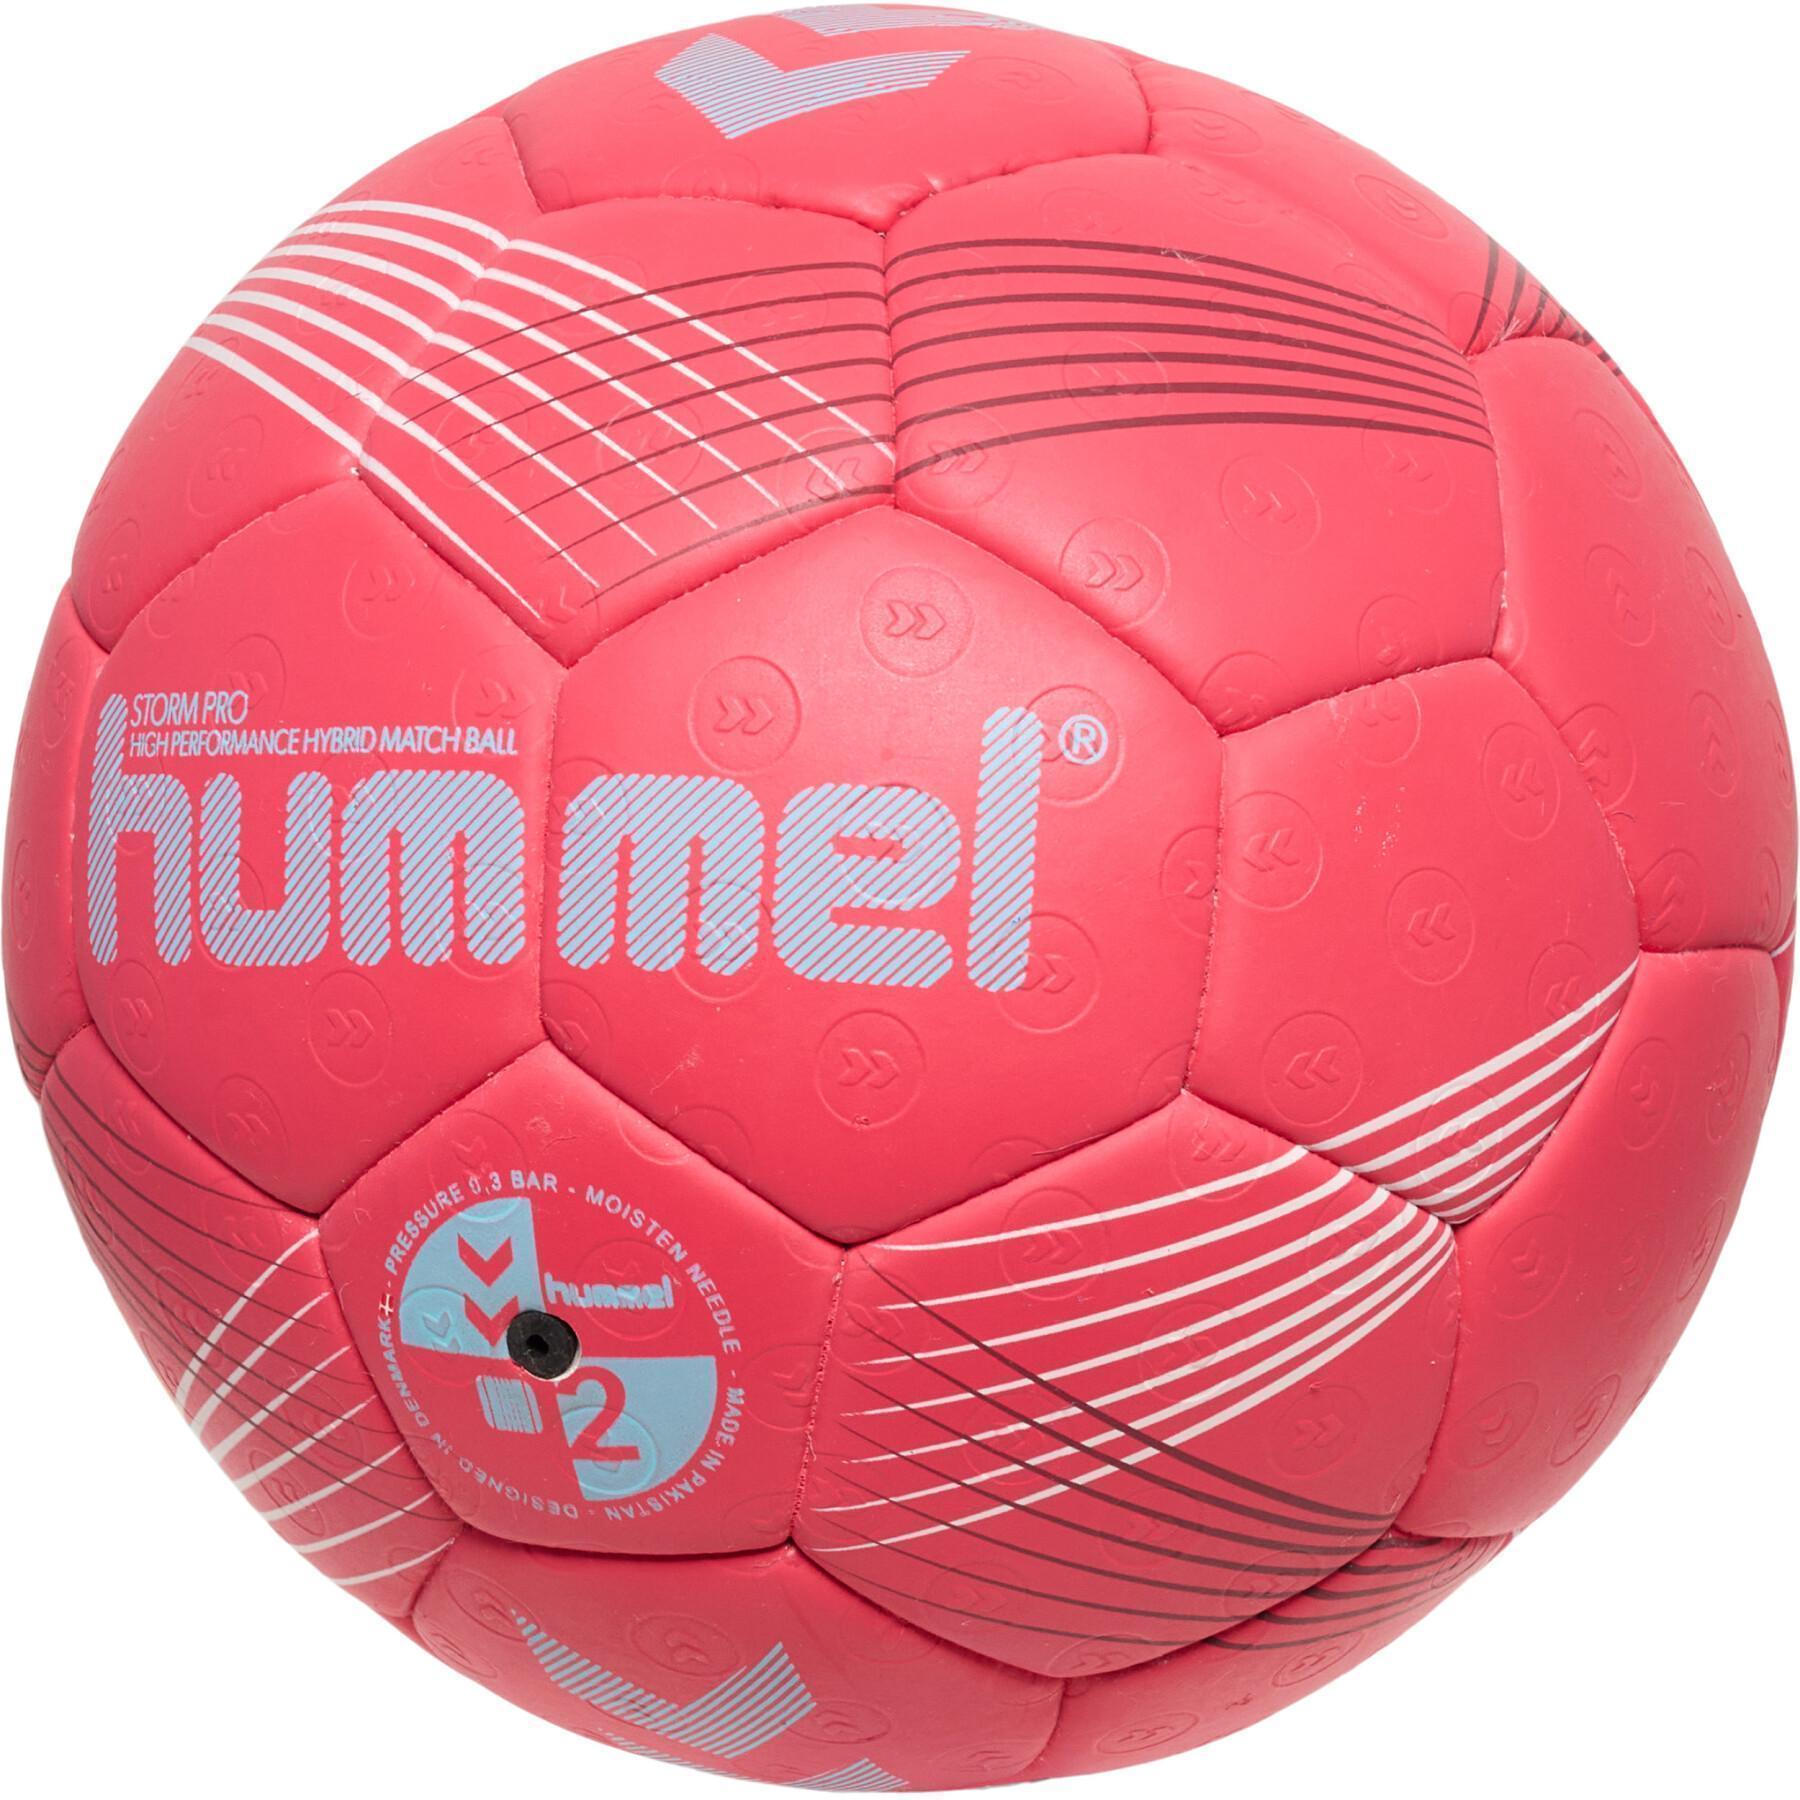 Balón Hummel Storm Pro